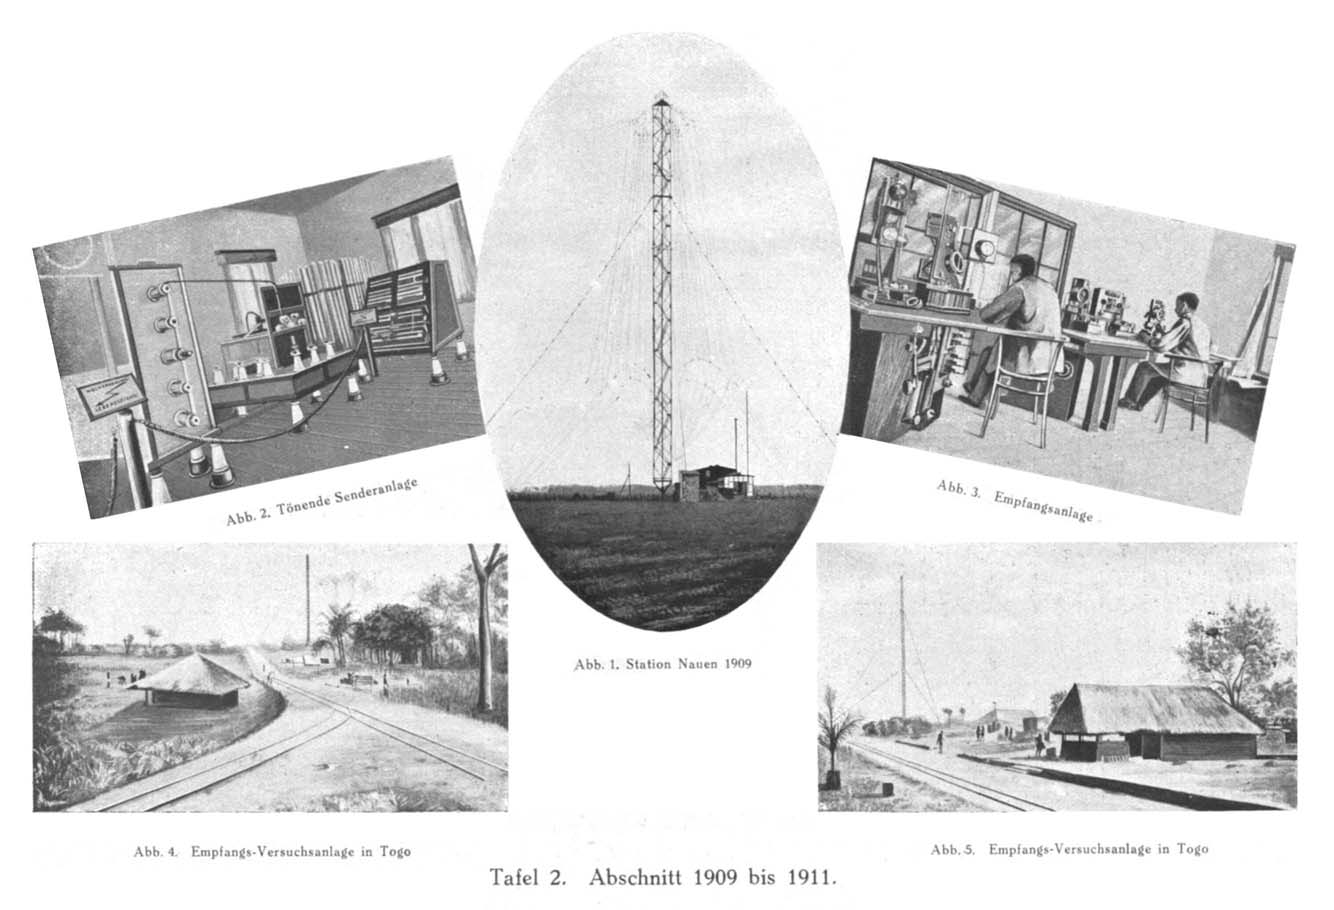 Abb. 2. Tönende Senderanlage Abb. 3. Empfangsanlage Abb. 1. Station Nauen 1909 Abb. 4.